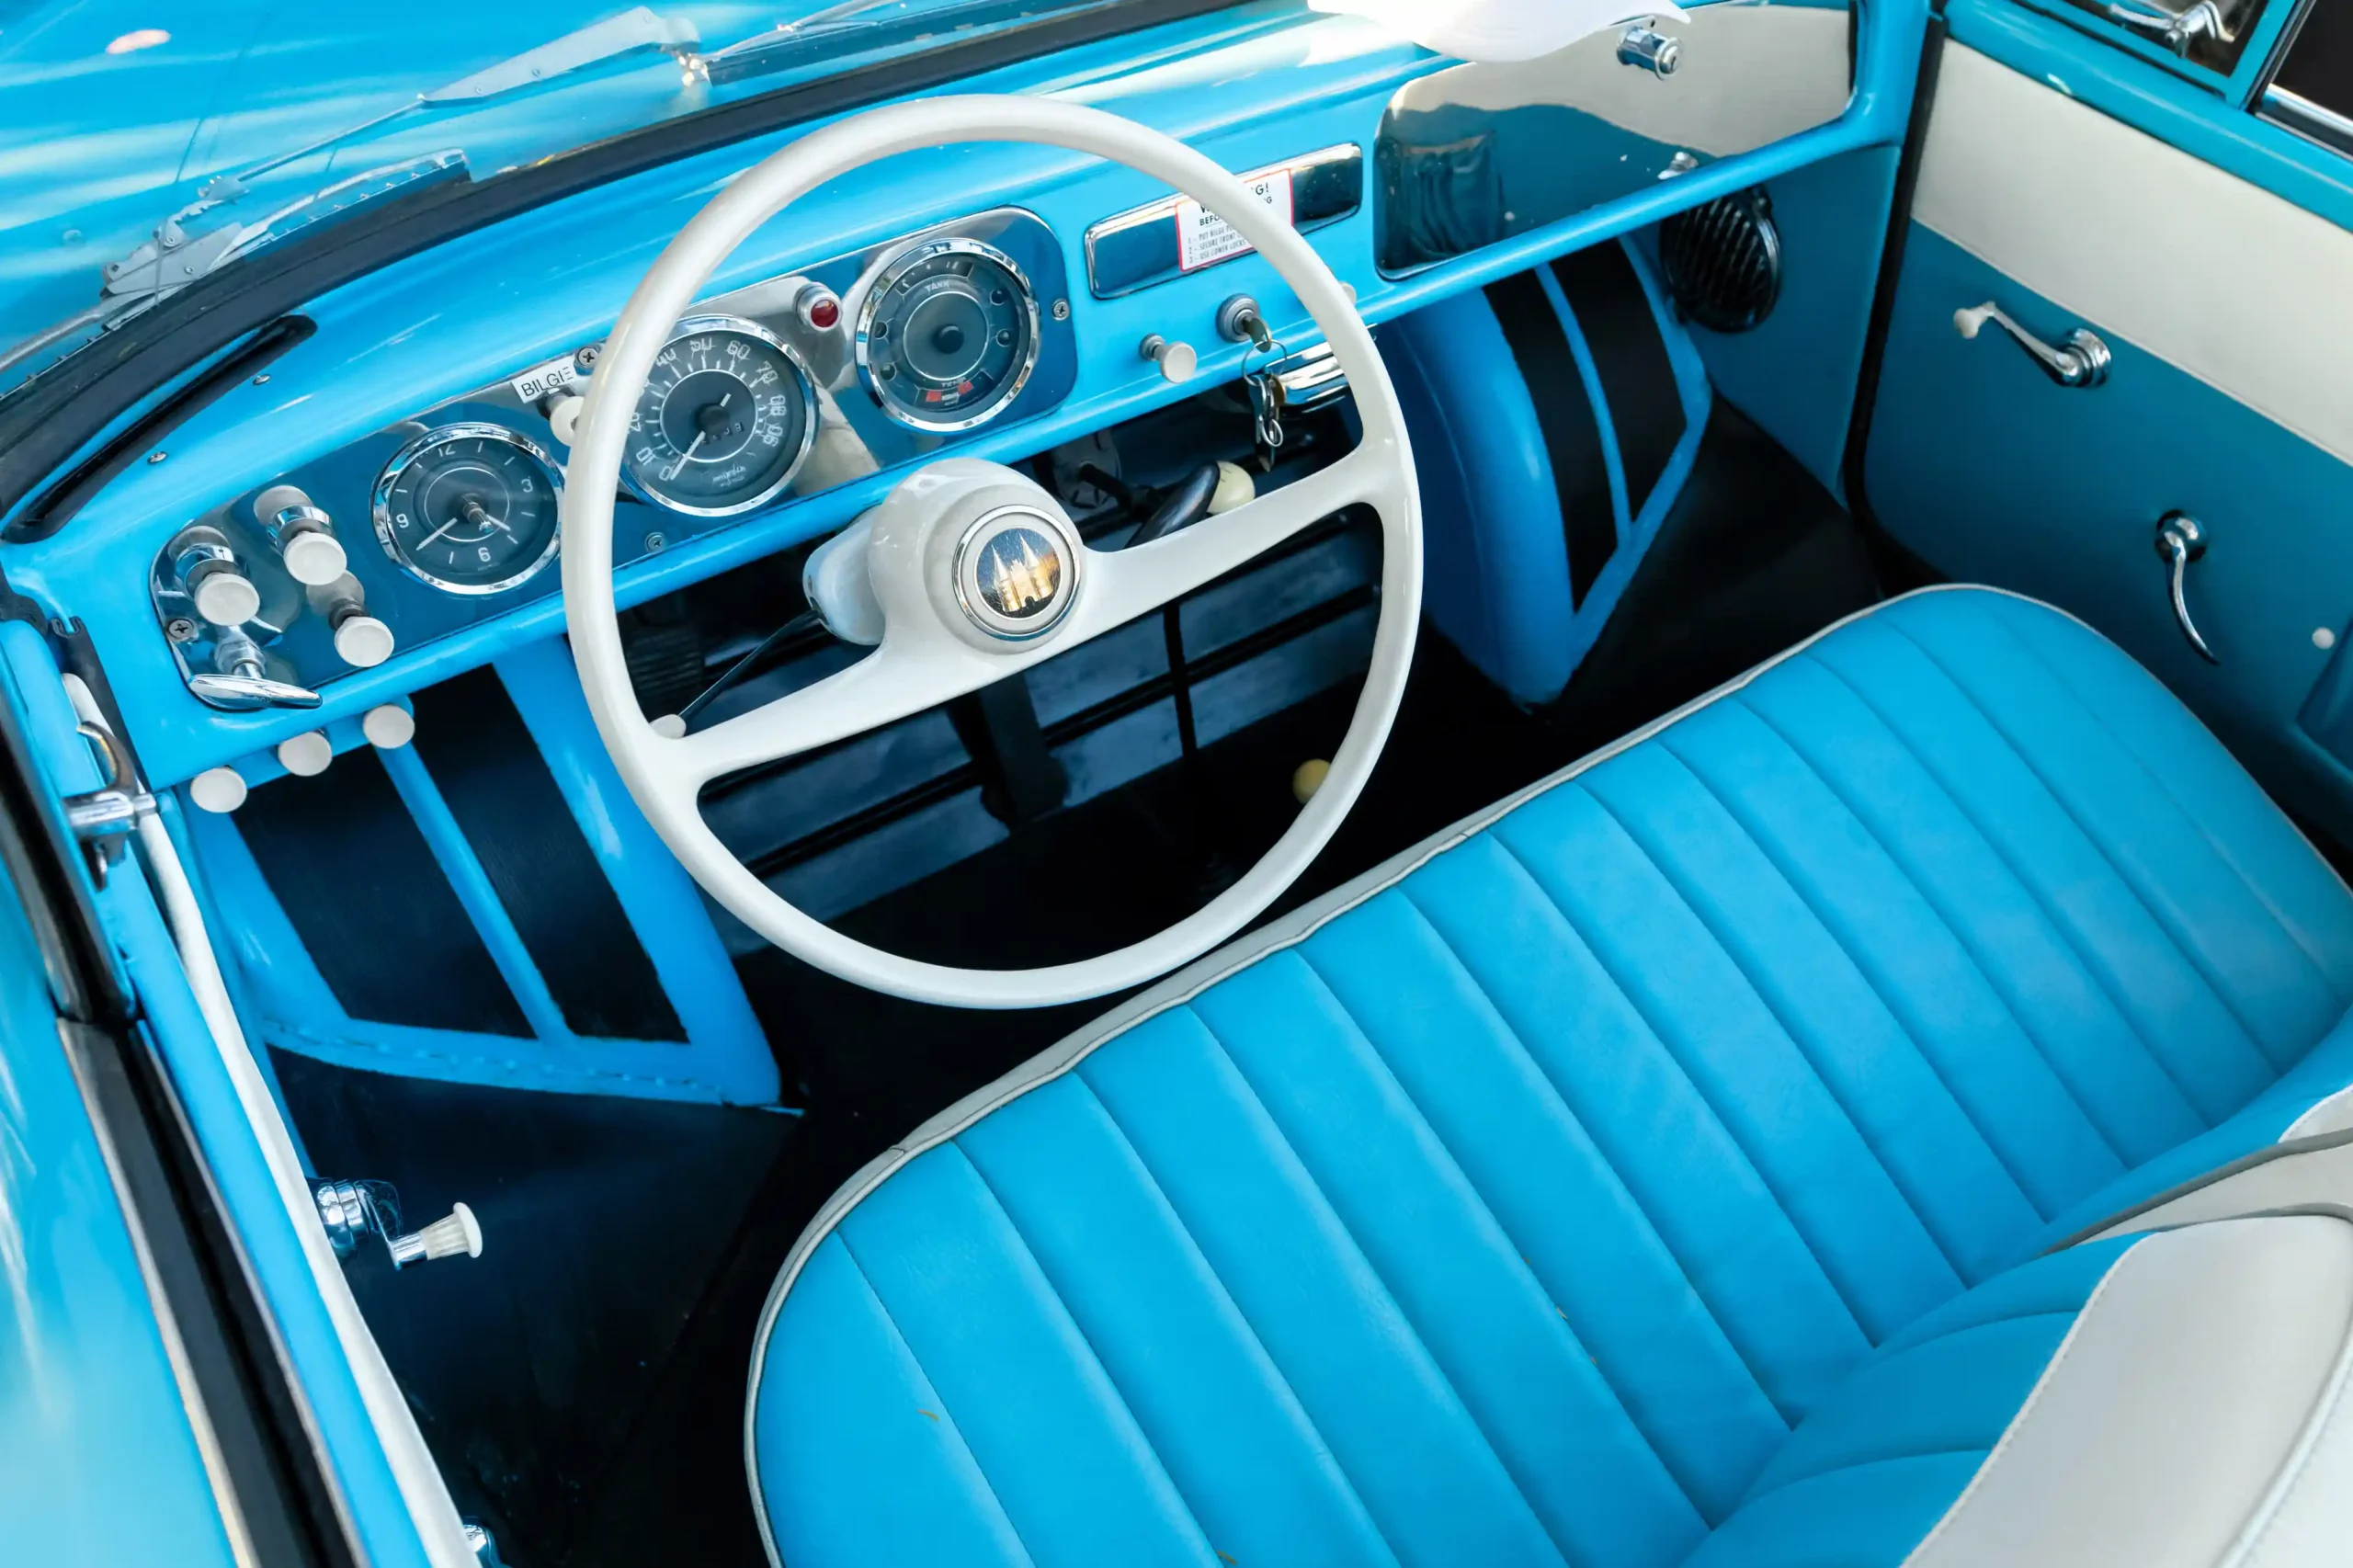 The classic 1962 Amphicar 770 James Bond-style, amphibious car.